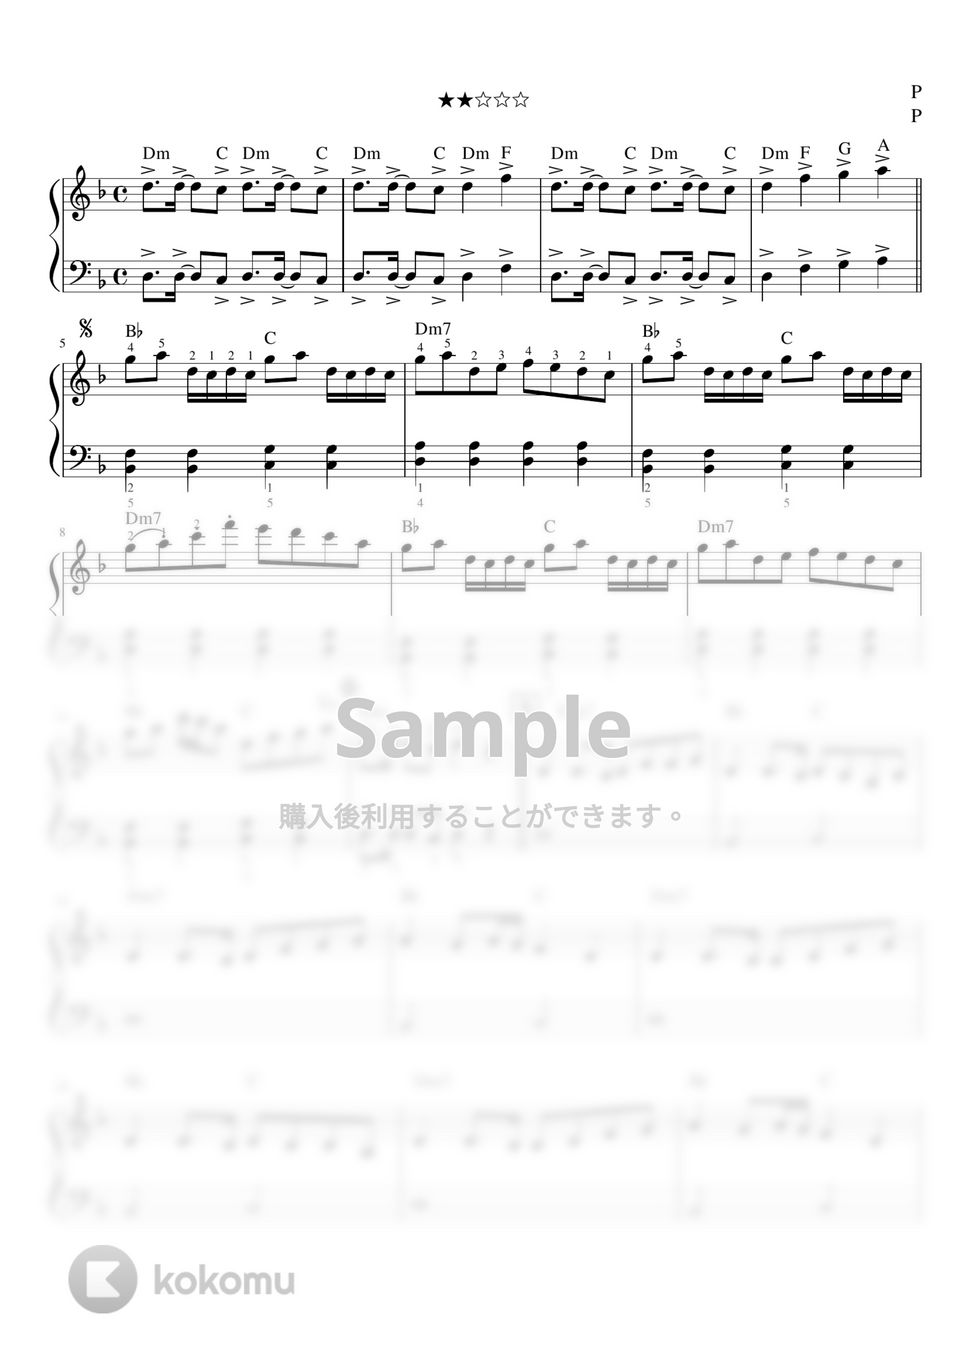 黒うさP - 千本桜 (ピアノソロ / 初級) by orinpia music